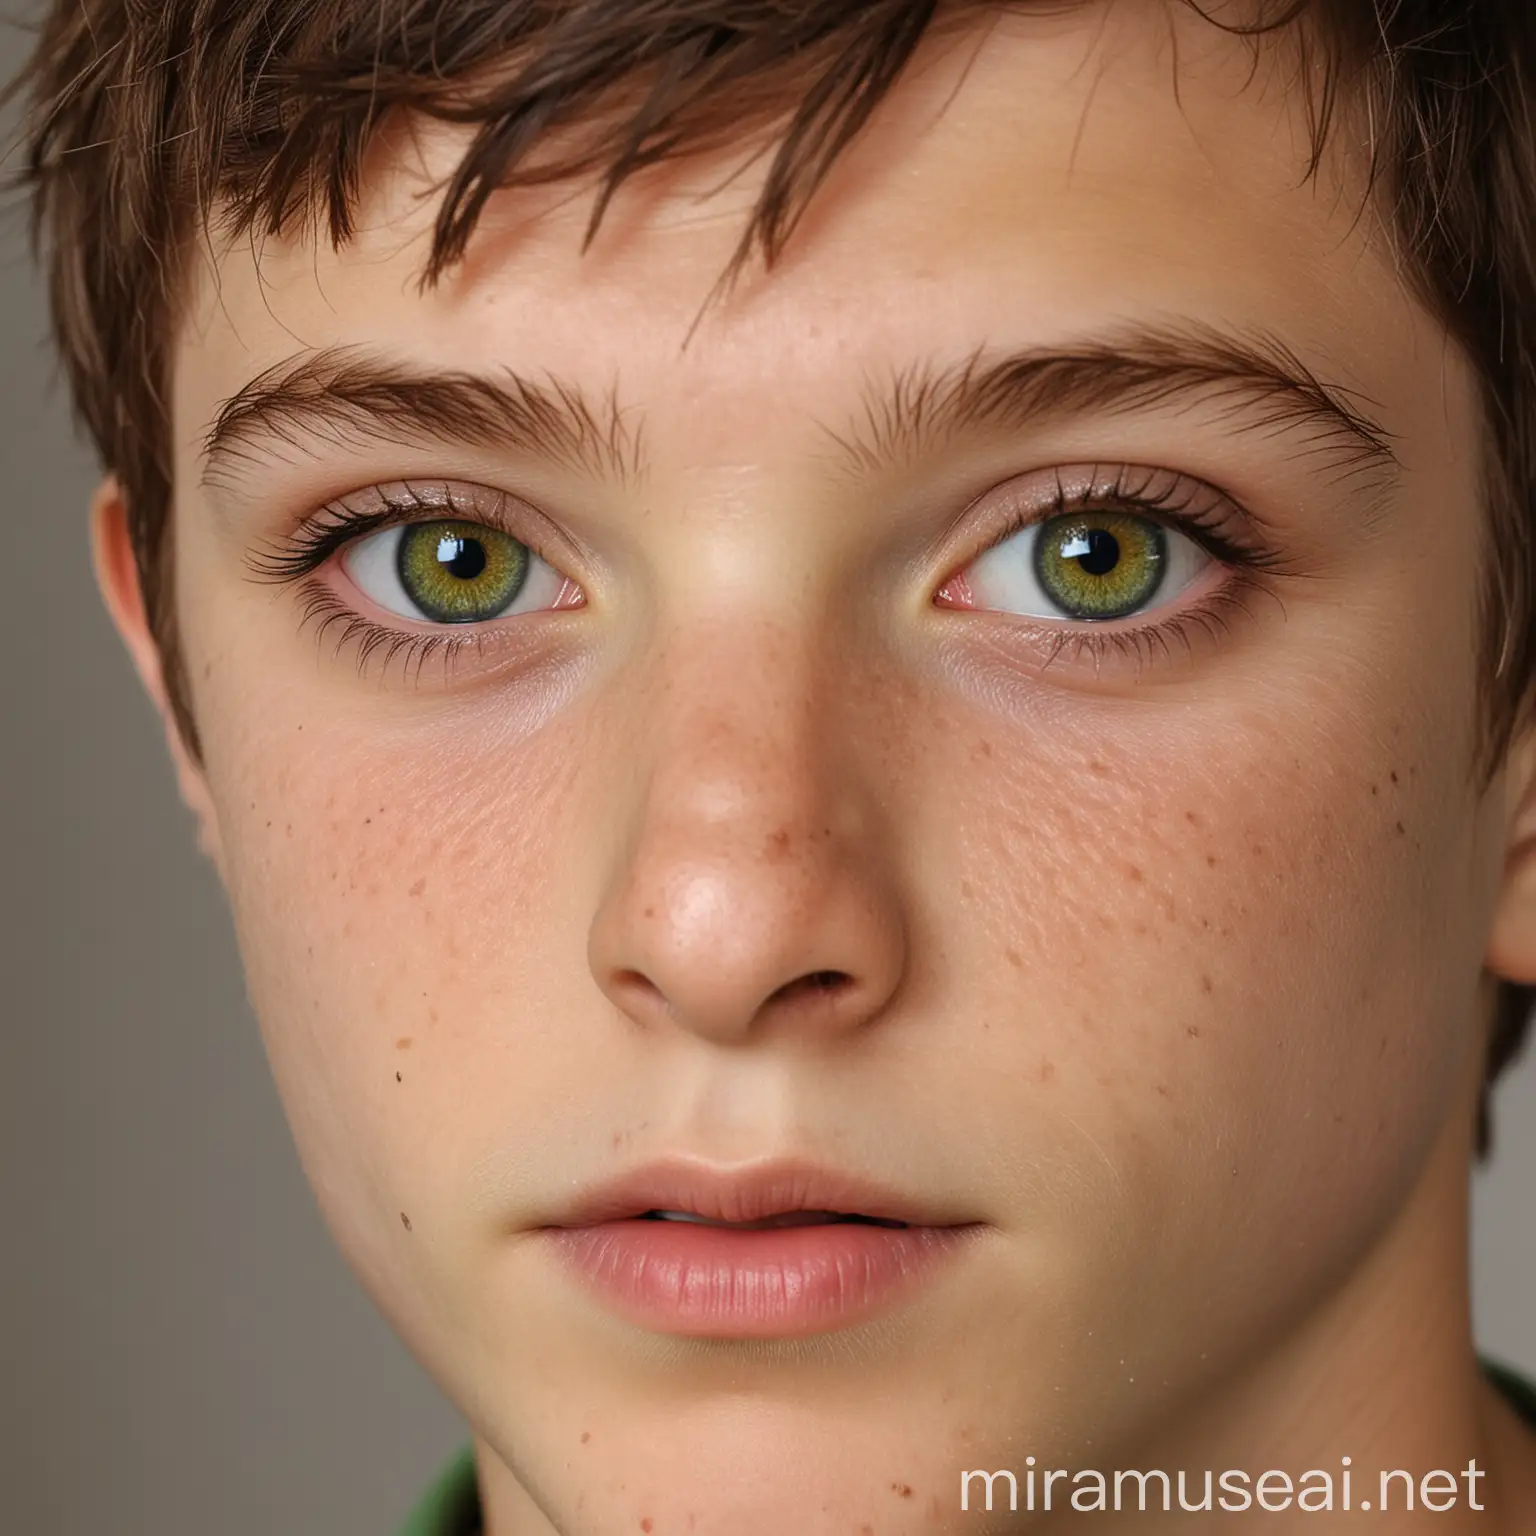 Teenage Boy with Lizard Eyes Aged 18